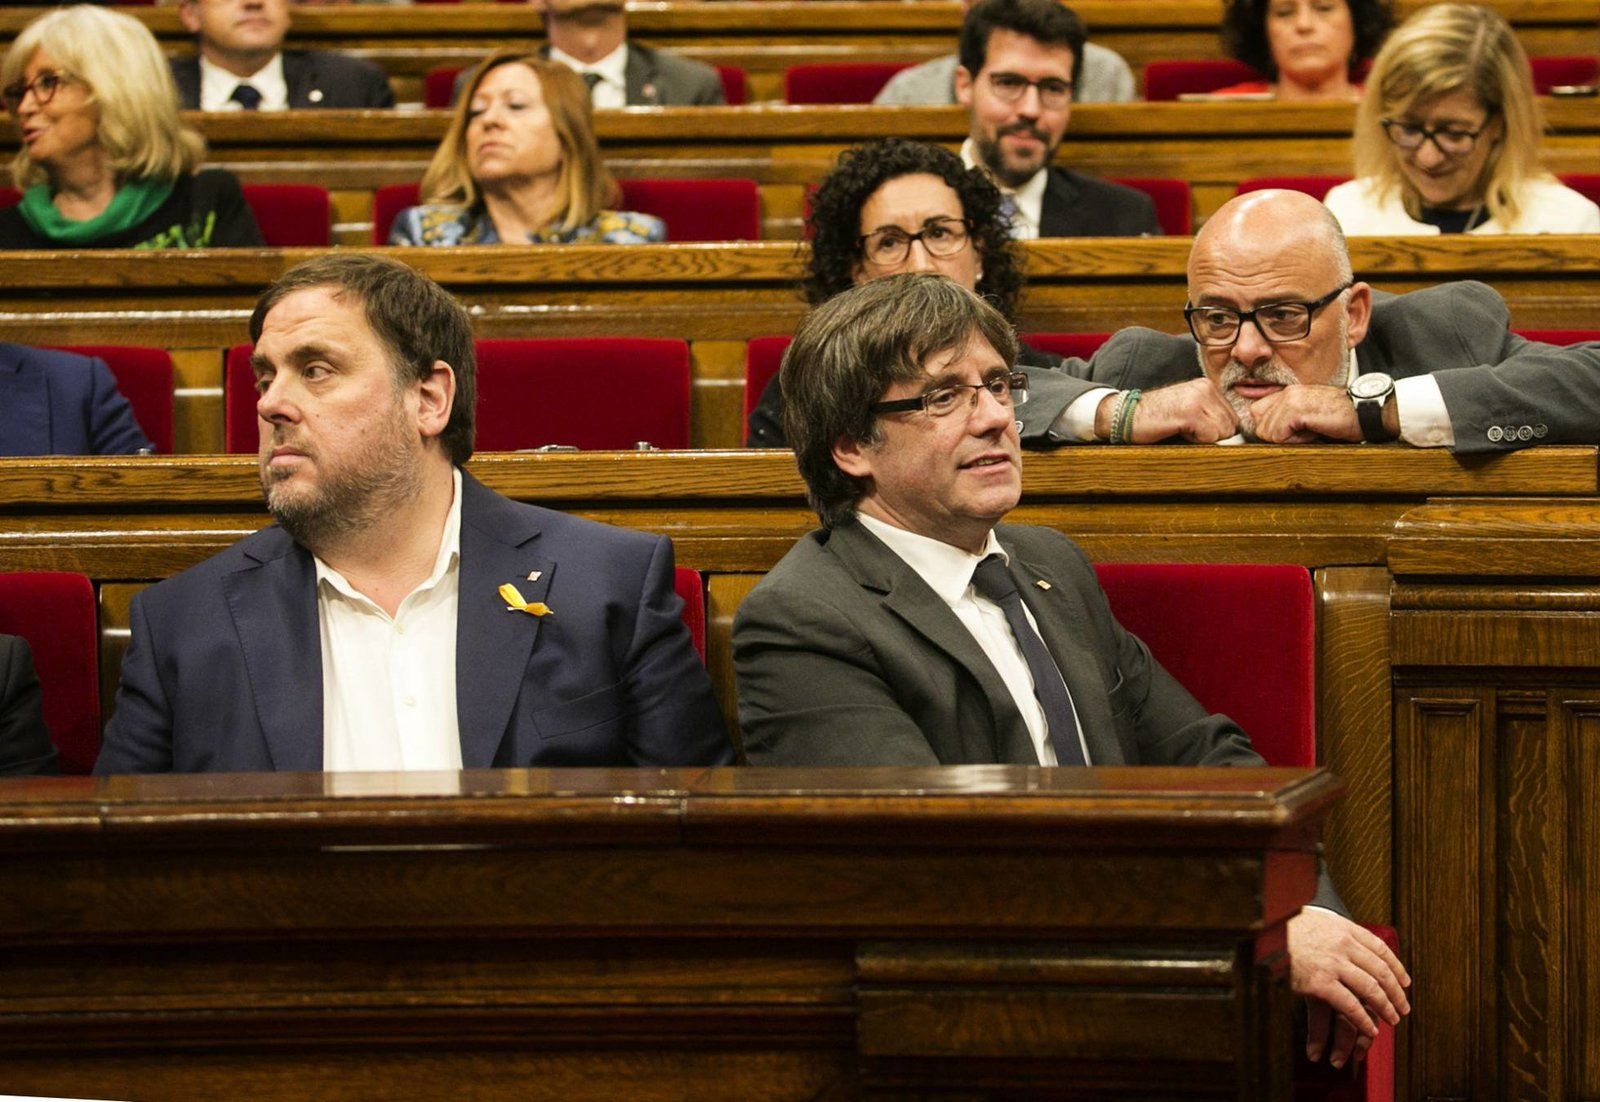 Carles Puigdemont y Oriol Junqueras en el Parlament de Cataluña..jpg